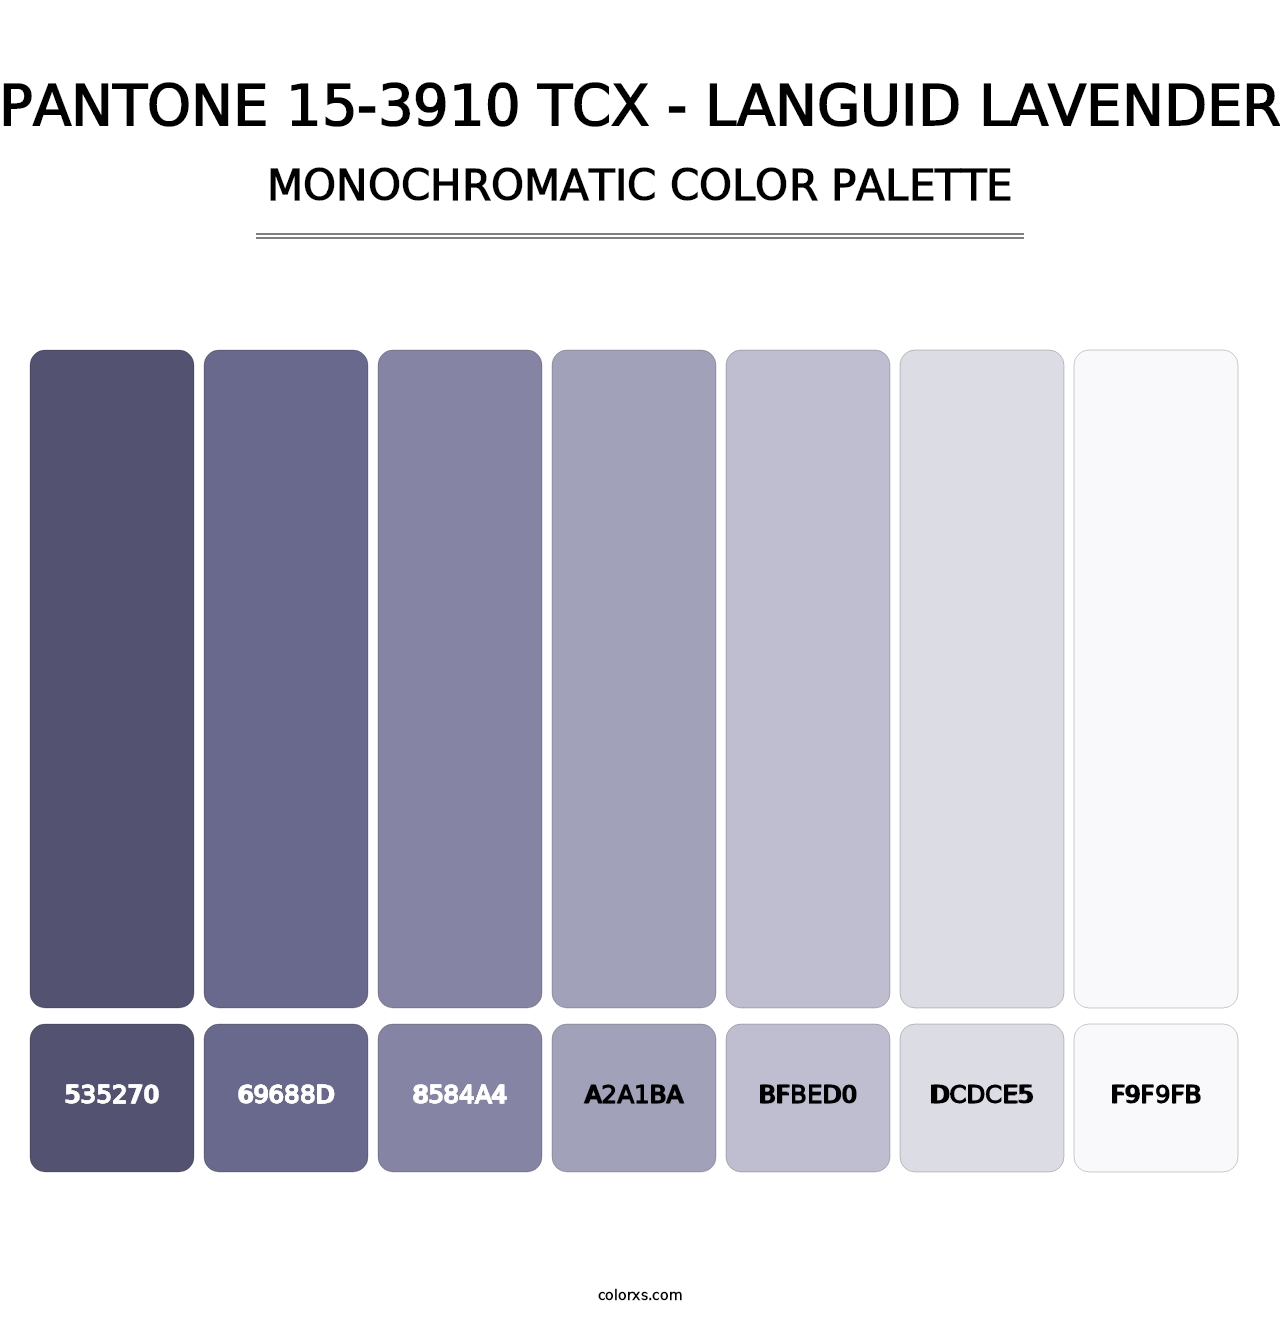 PANTONE 15-3910 TCX - Languid Lavender - Monochromatic Color Palette